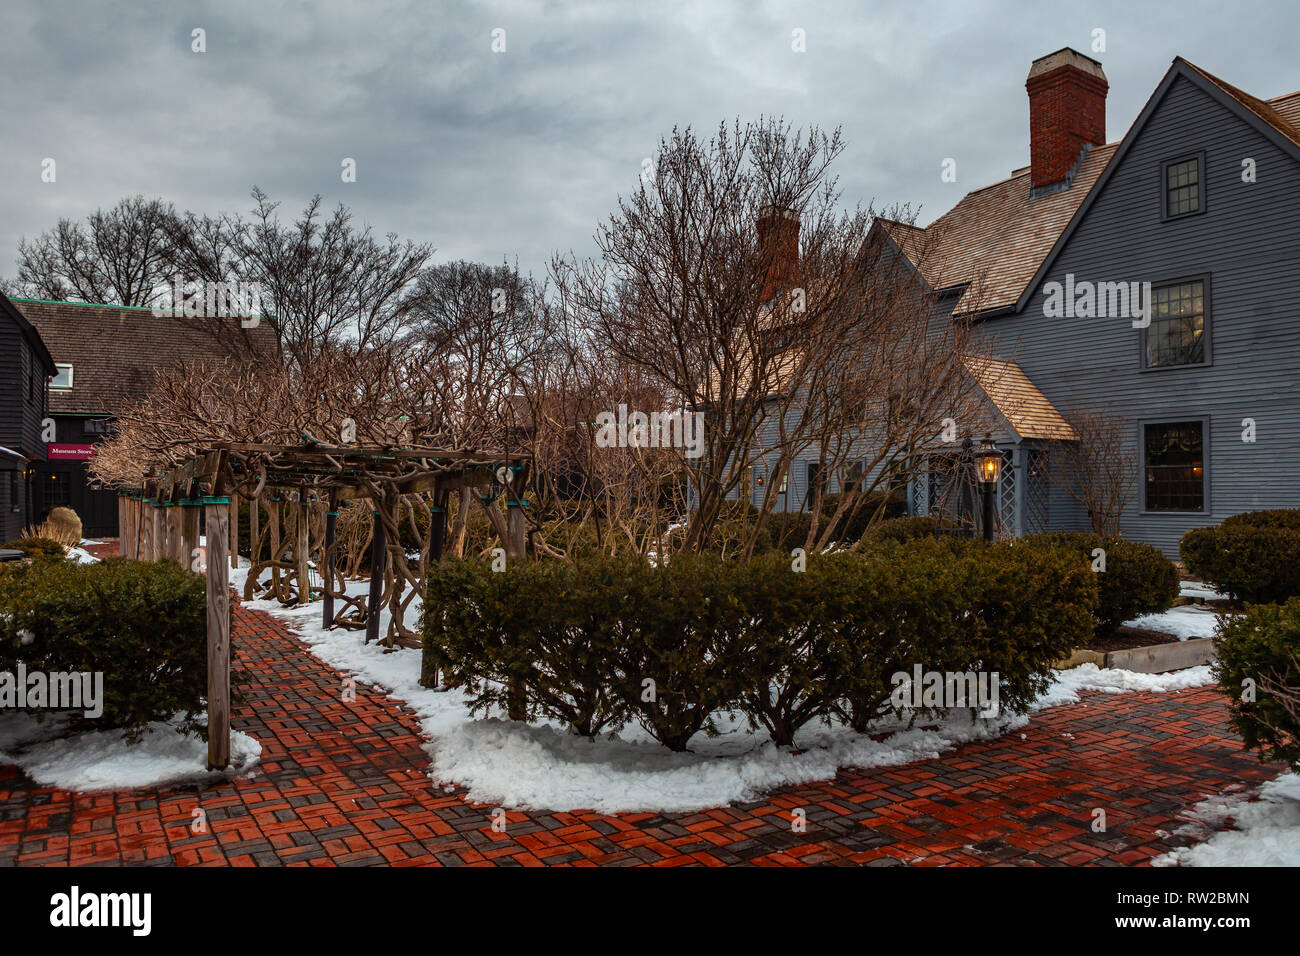 Das Haus der sieben Giebel museum in Salem, Massachusetts, dass der Roman des amerikanischen Schriftstellers Nathaniel Hawthorne inspiriert. Stockfoto